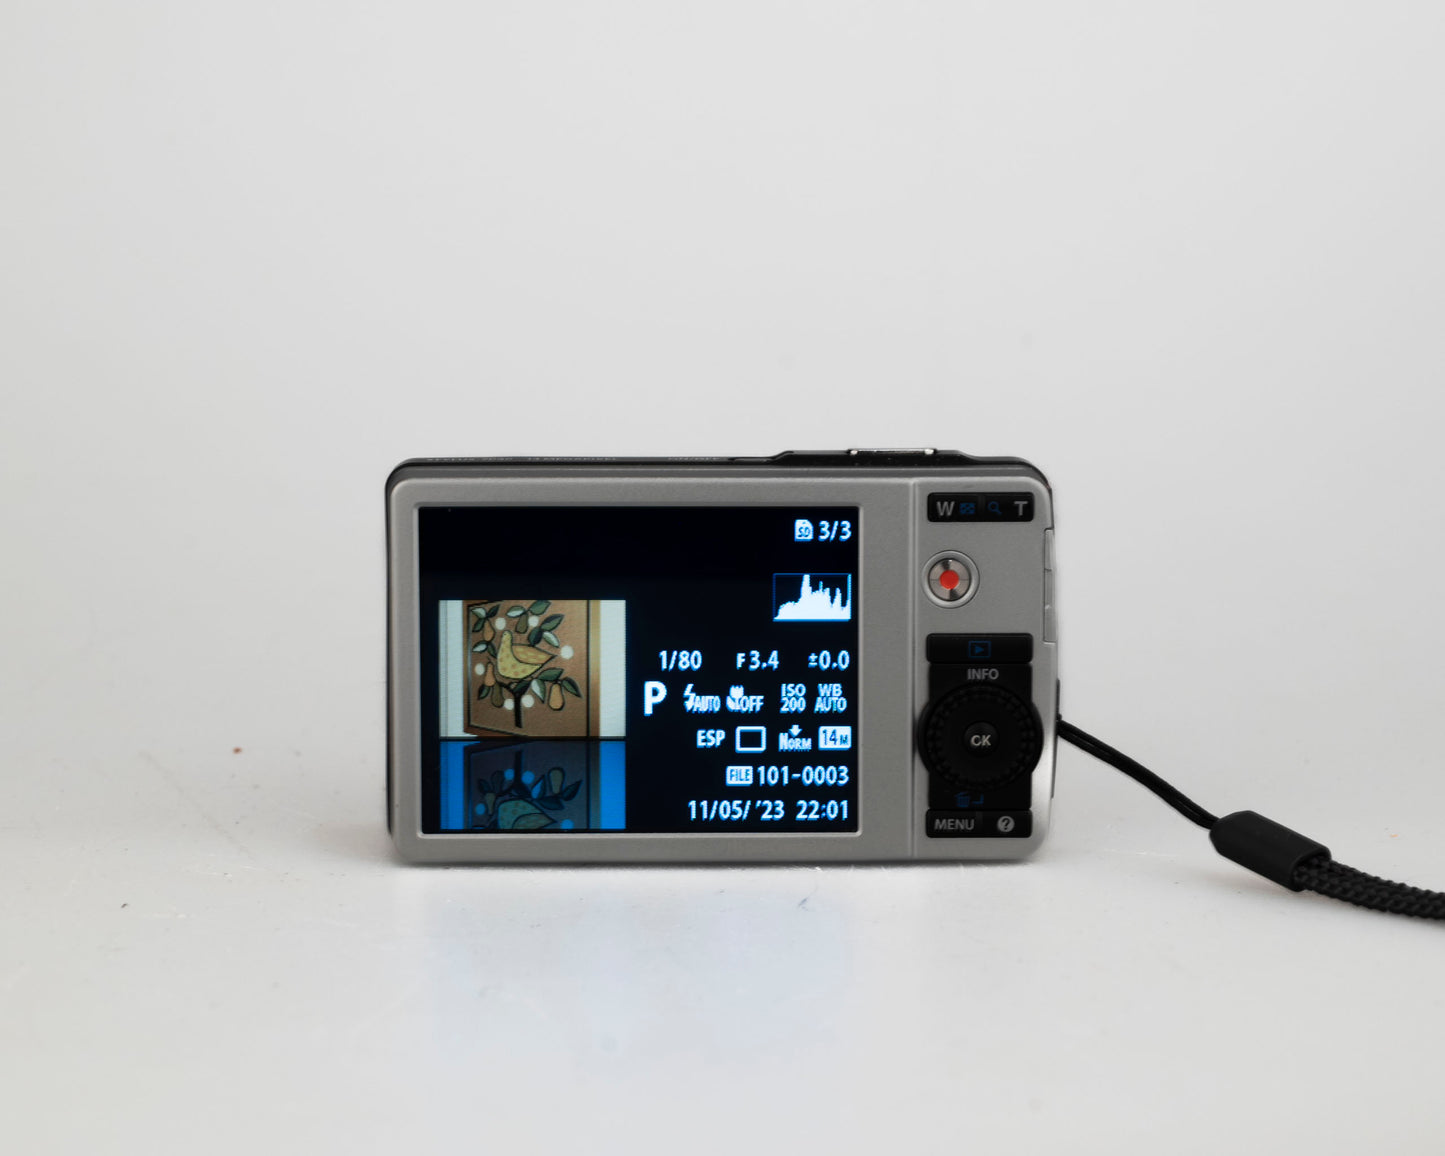 Olympus Stylus 7040 (alias mju 7040) Appareil photo numérique à capteur CCD 14 MP avec chargeur + batterie + carte SD 4 Go